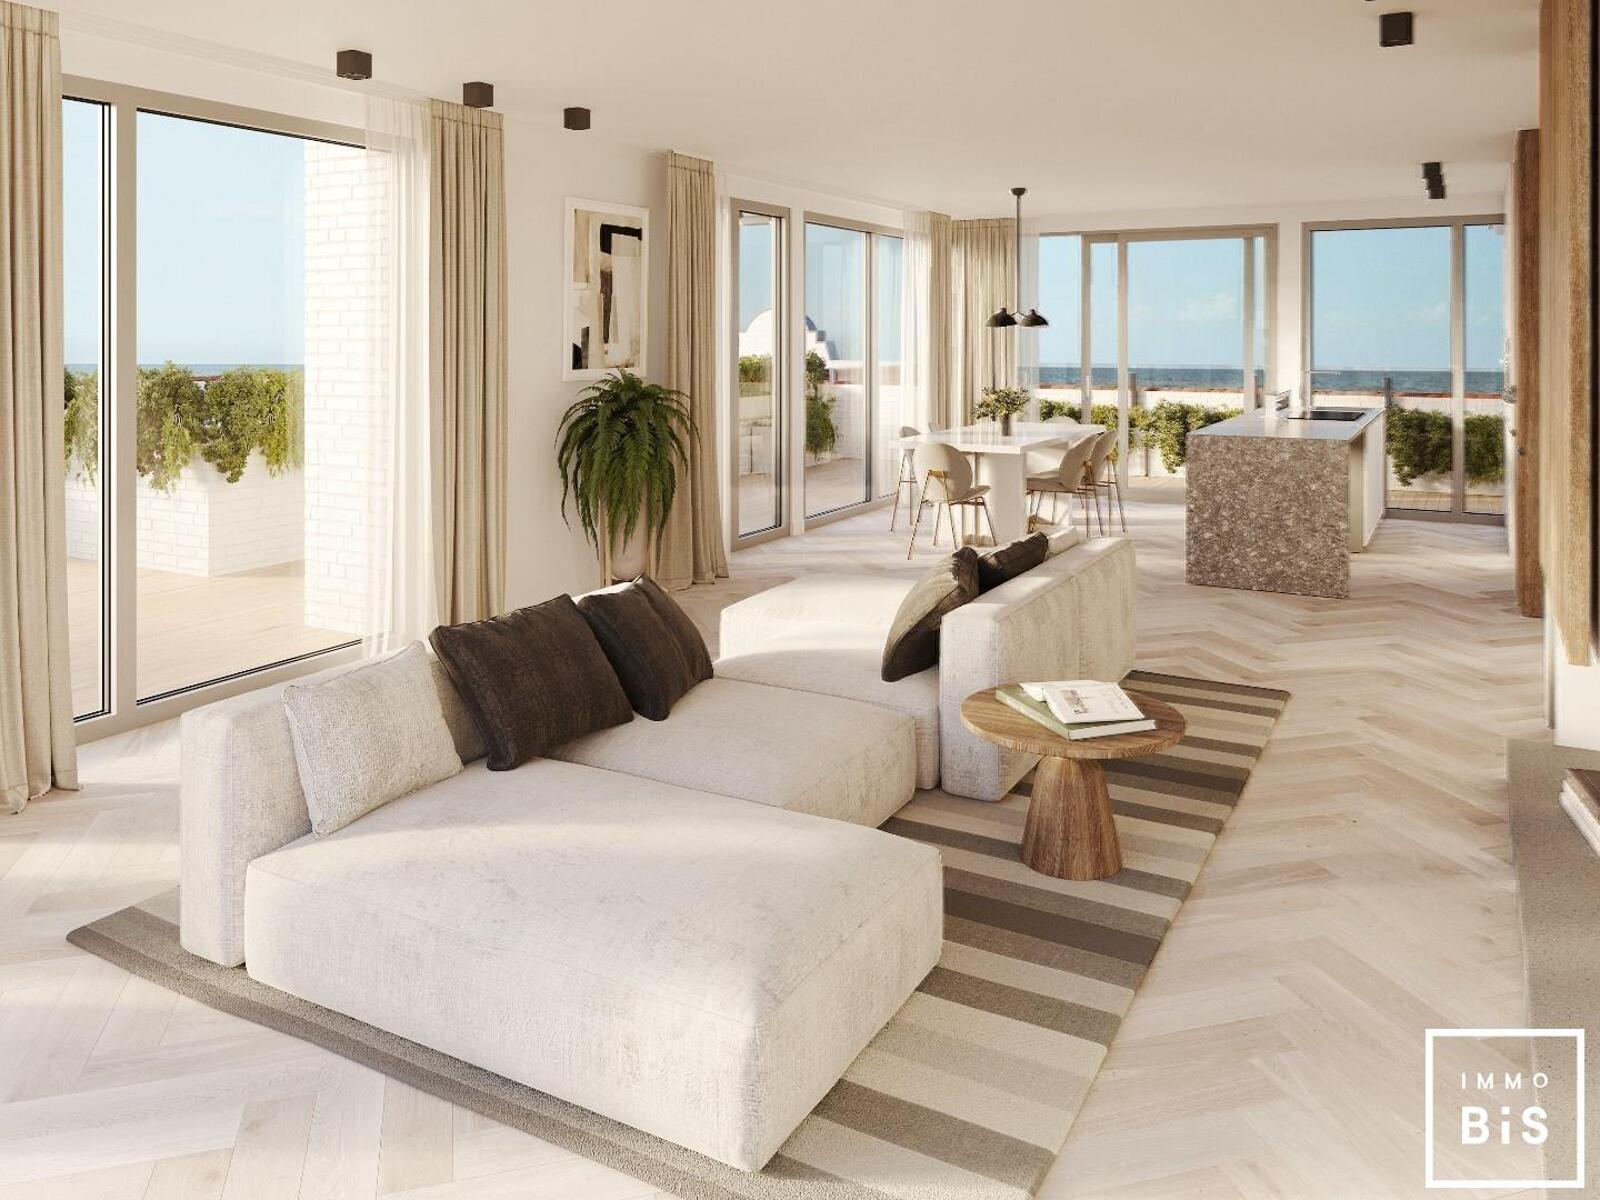 " Appartement villa moderne avec terrasse sur la Digue à Cadzand - Résidence Duinhof-Noord " 10